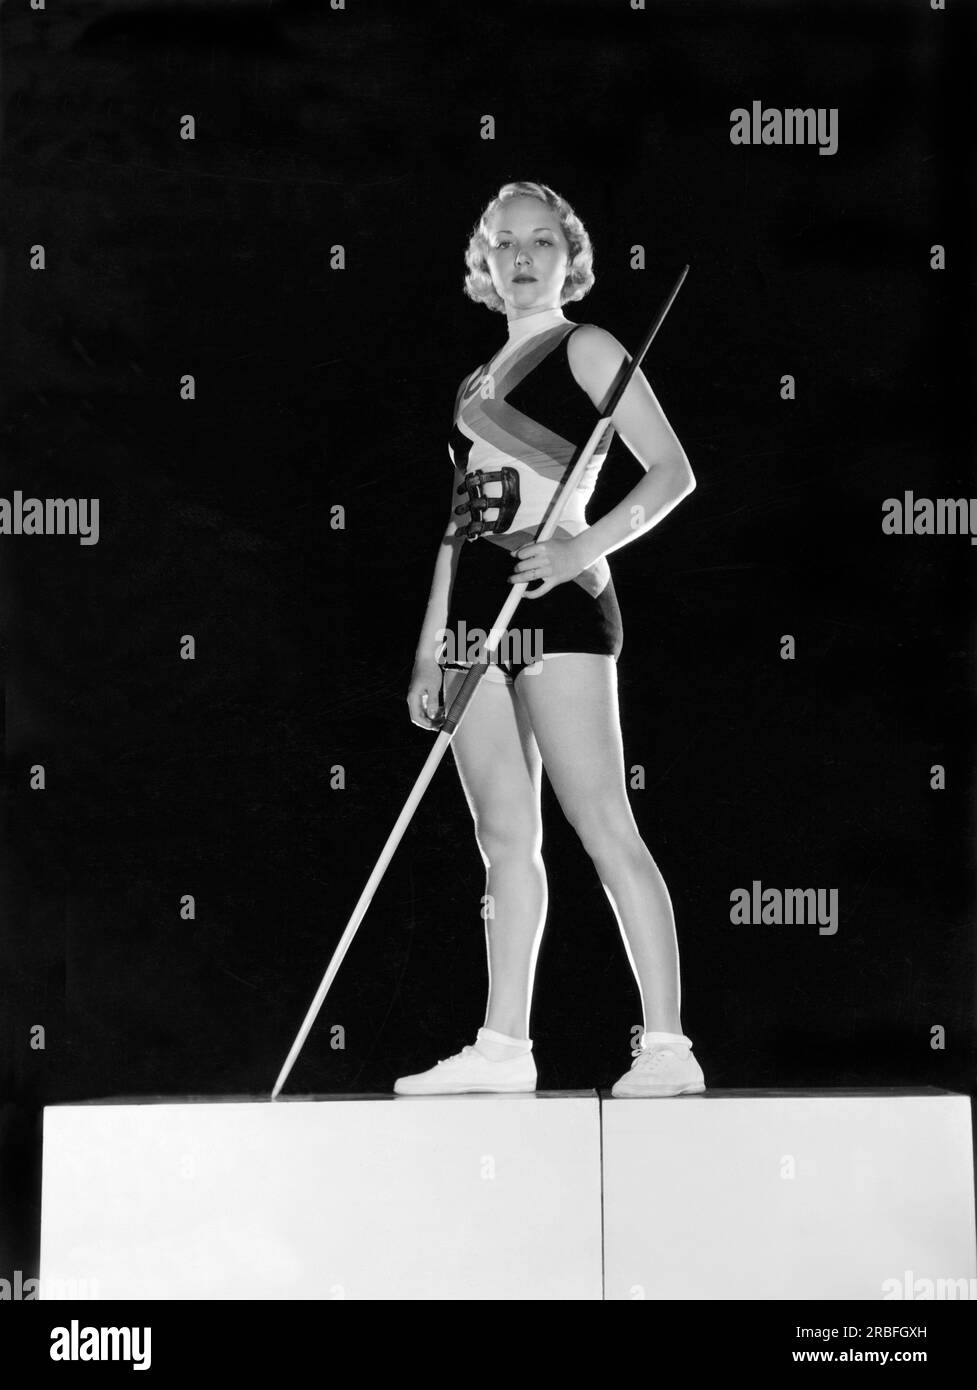 Hollywood, Californie : l'actrice 1932 Leila Hyams pose le rôle de la lance du Javelin, symbole des Jeux olympiques qui se tiendront cette année à Los Angeles. Banque D'Images